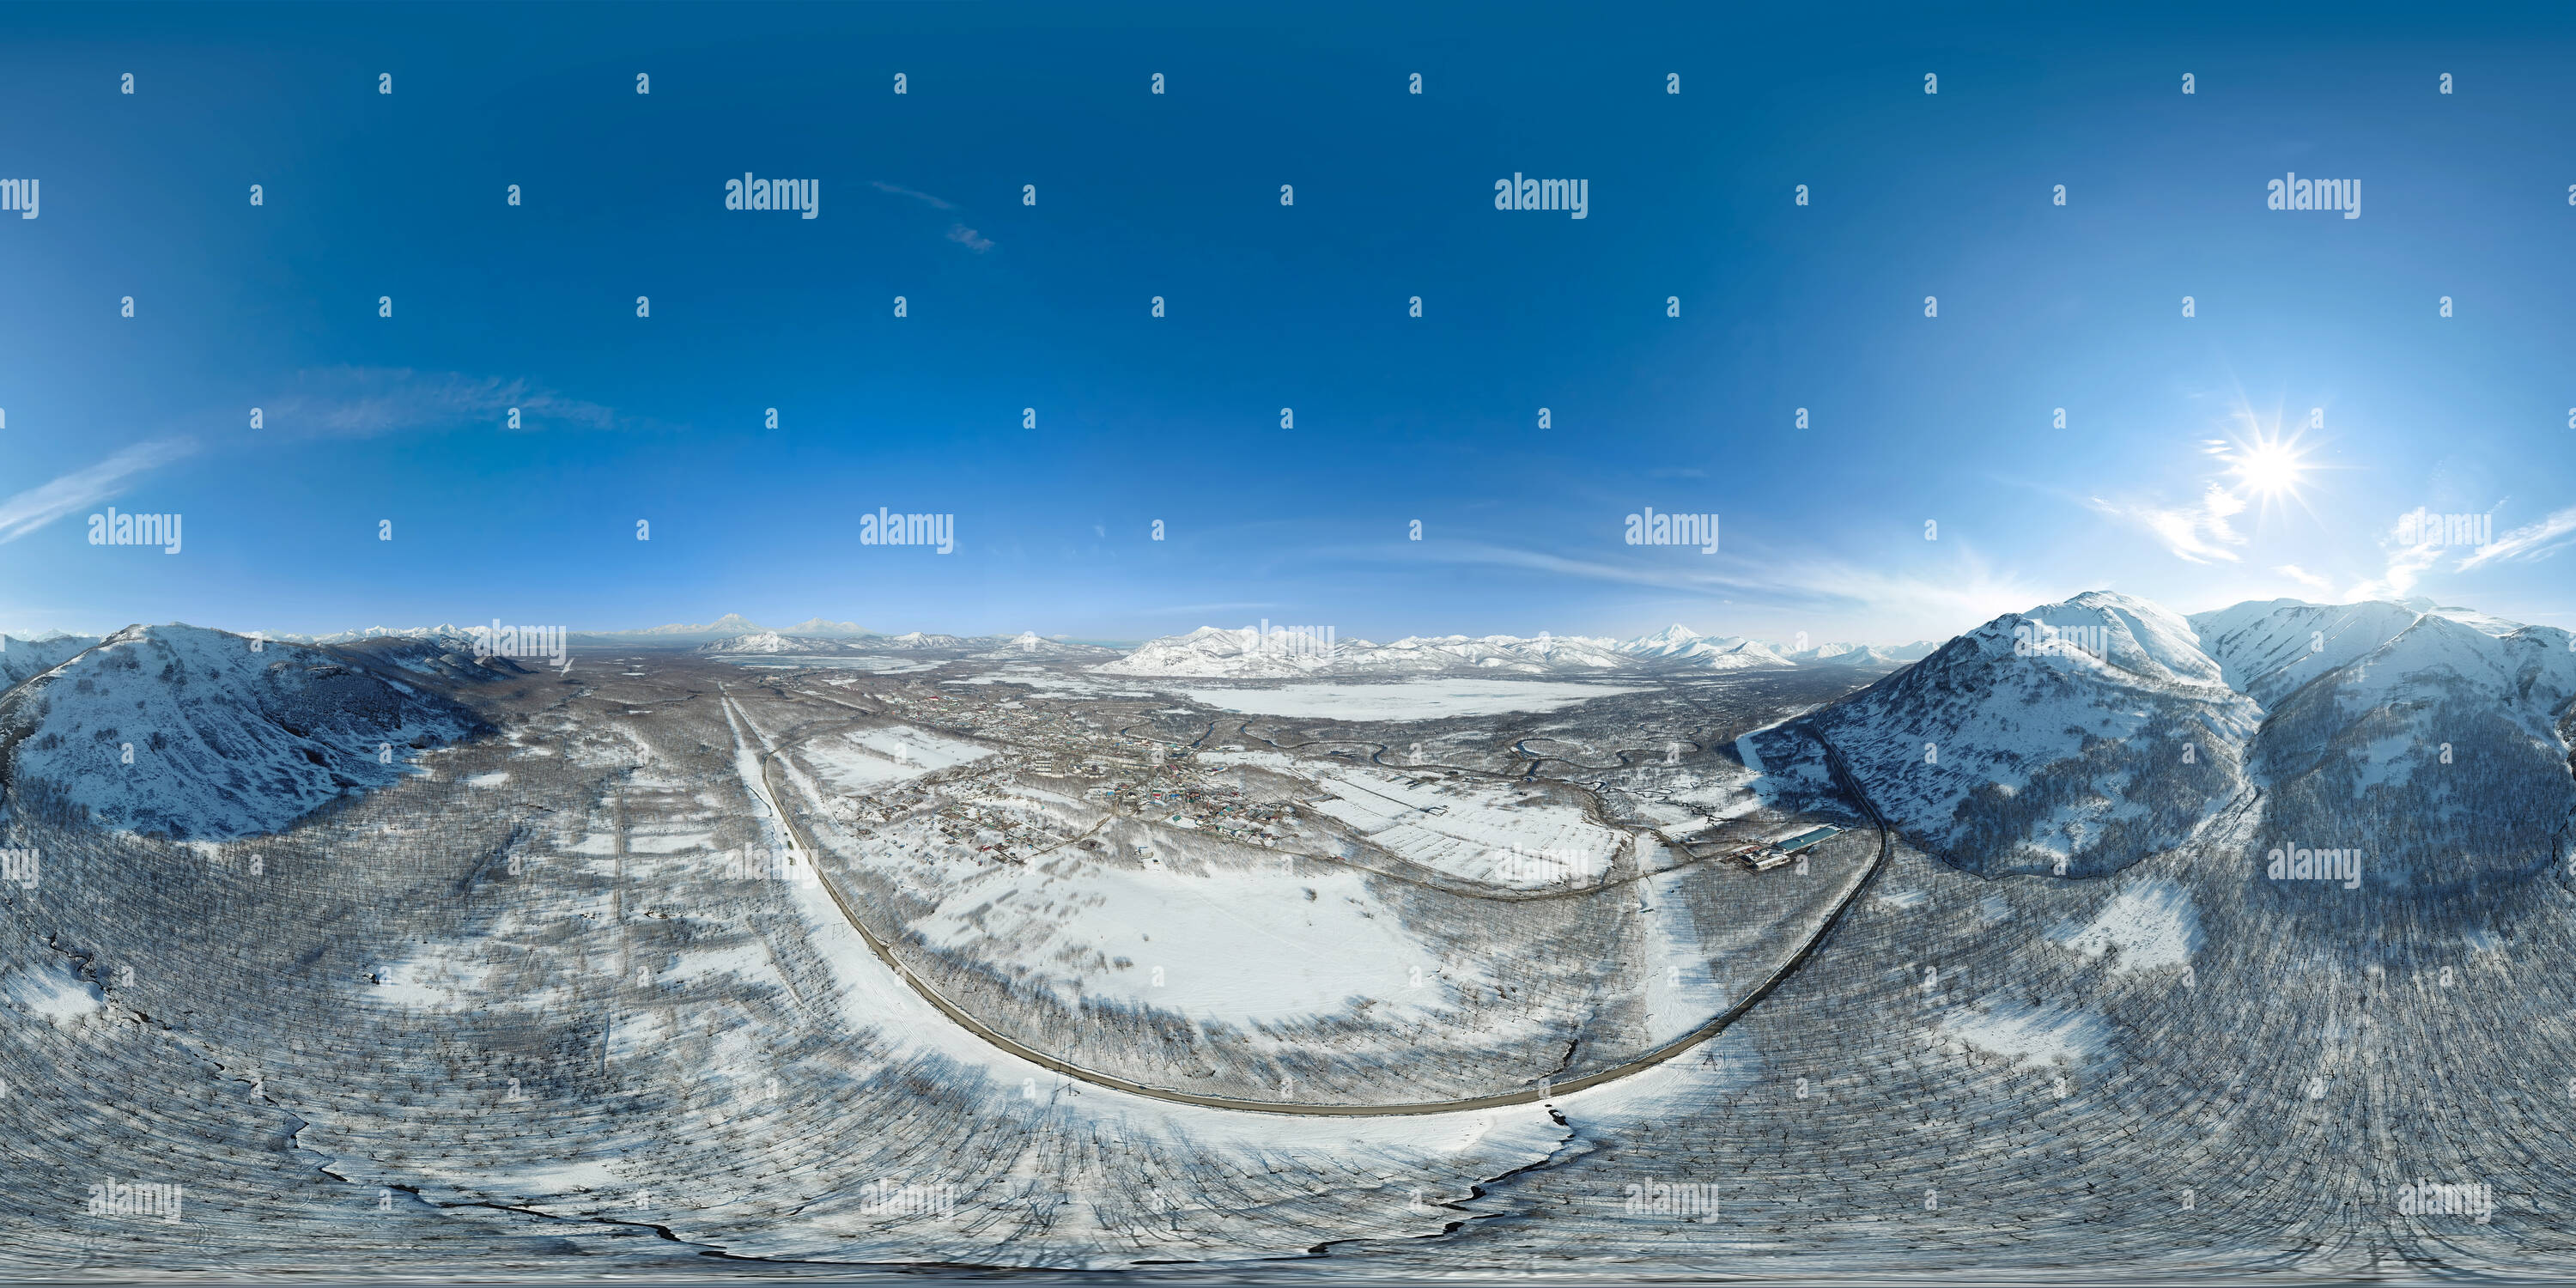 Visualizzazione panoramica a 360 gradi di Montagna Chirelchik 400 metri